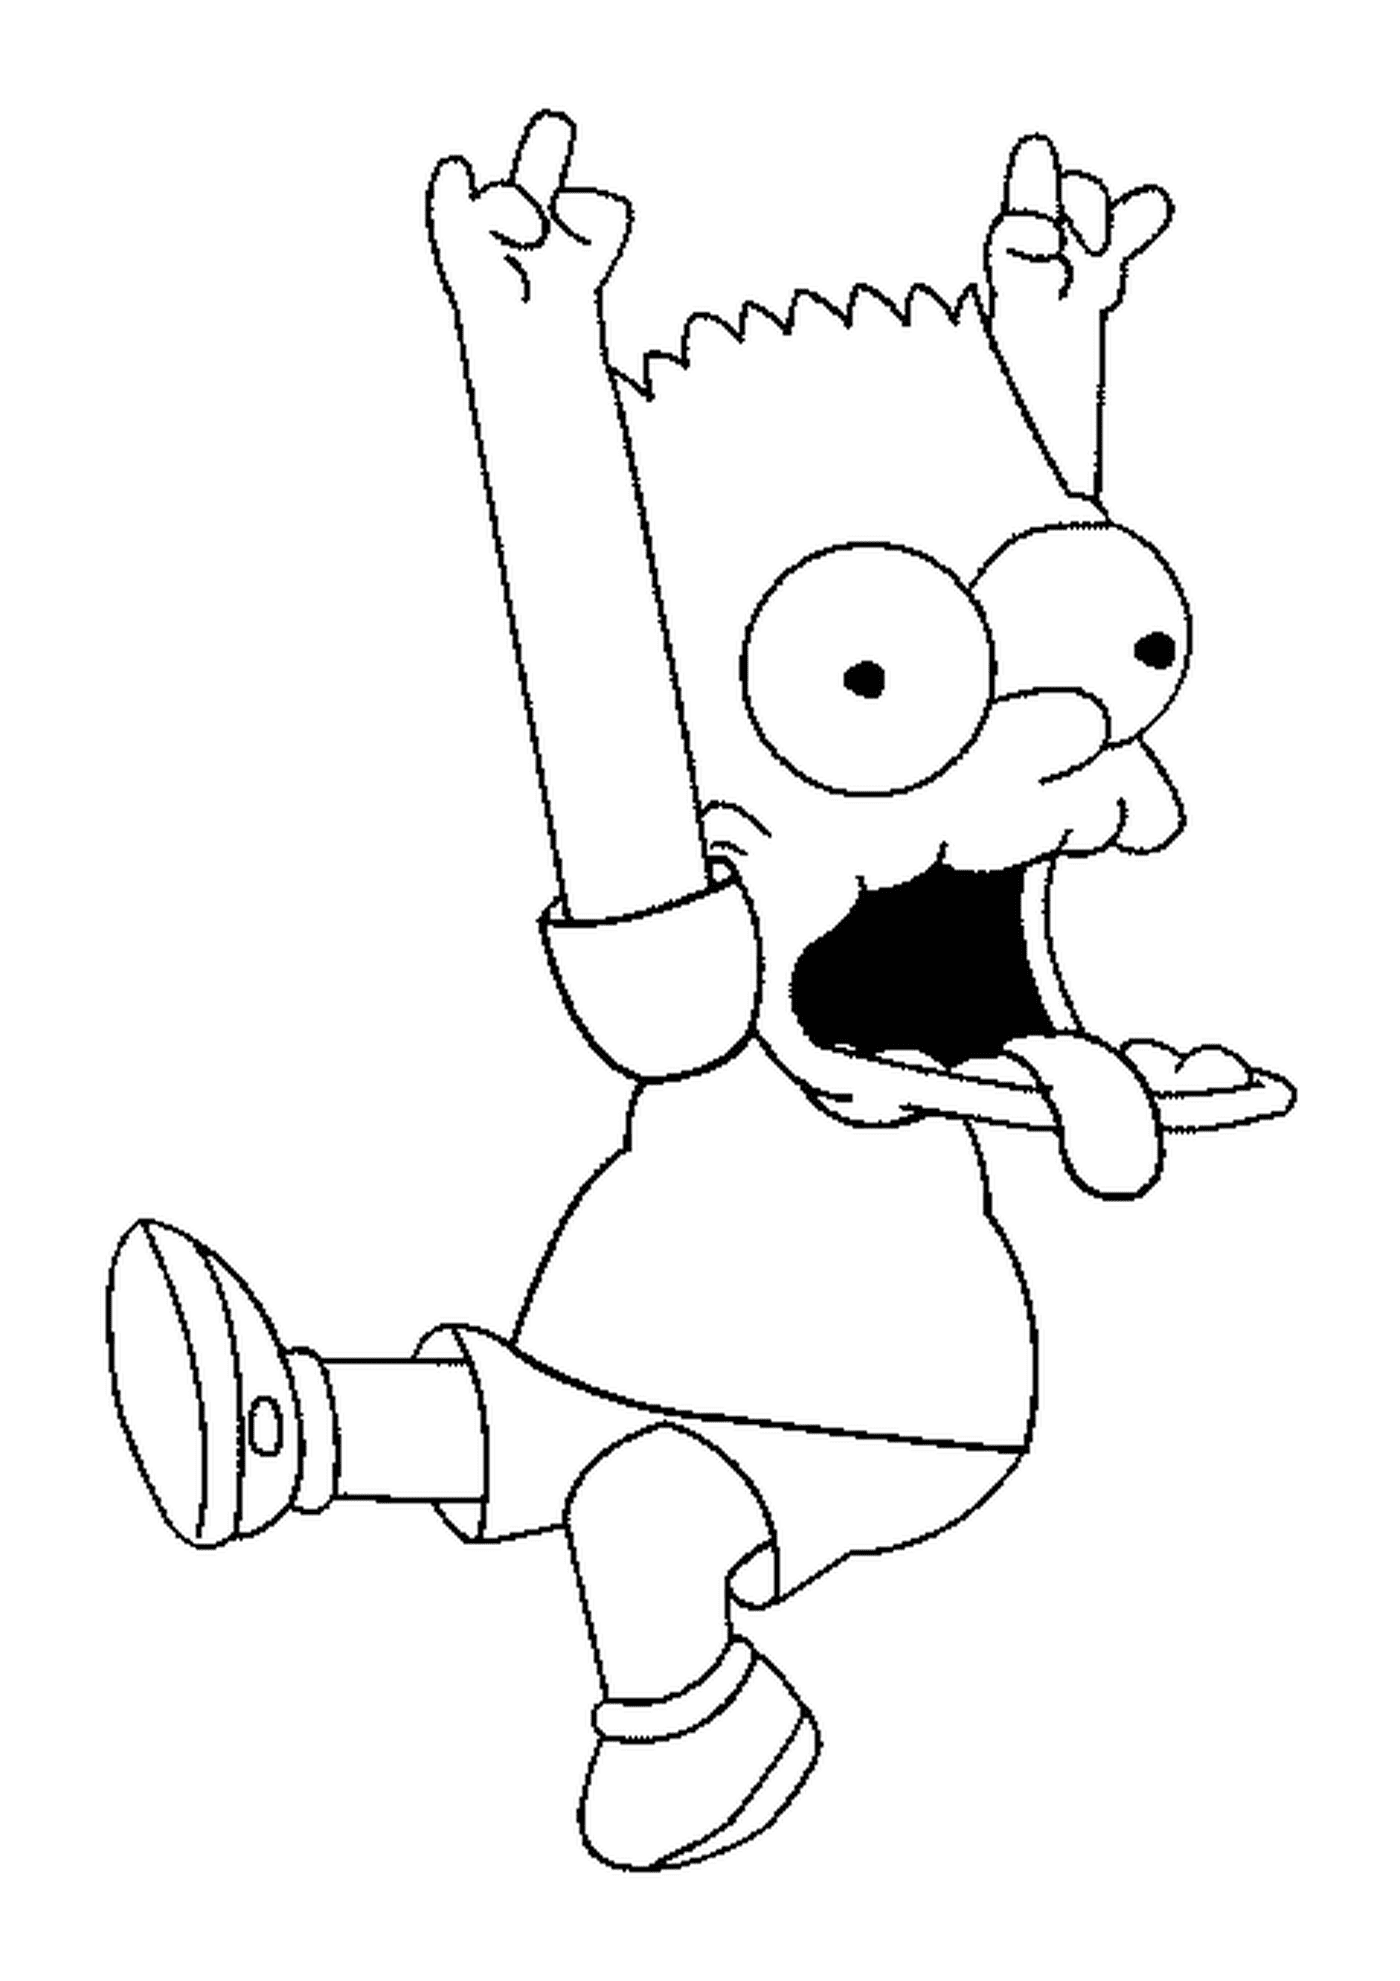  Bart faz uma careta com os braços no ar 